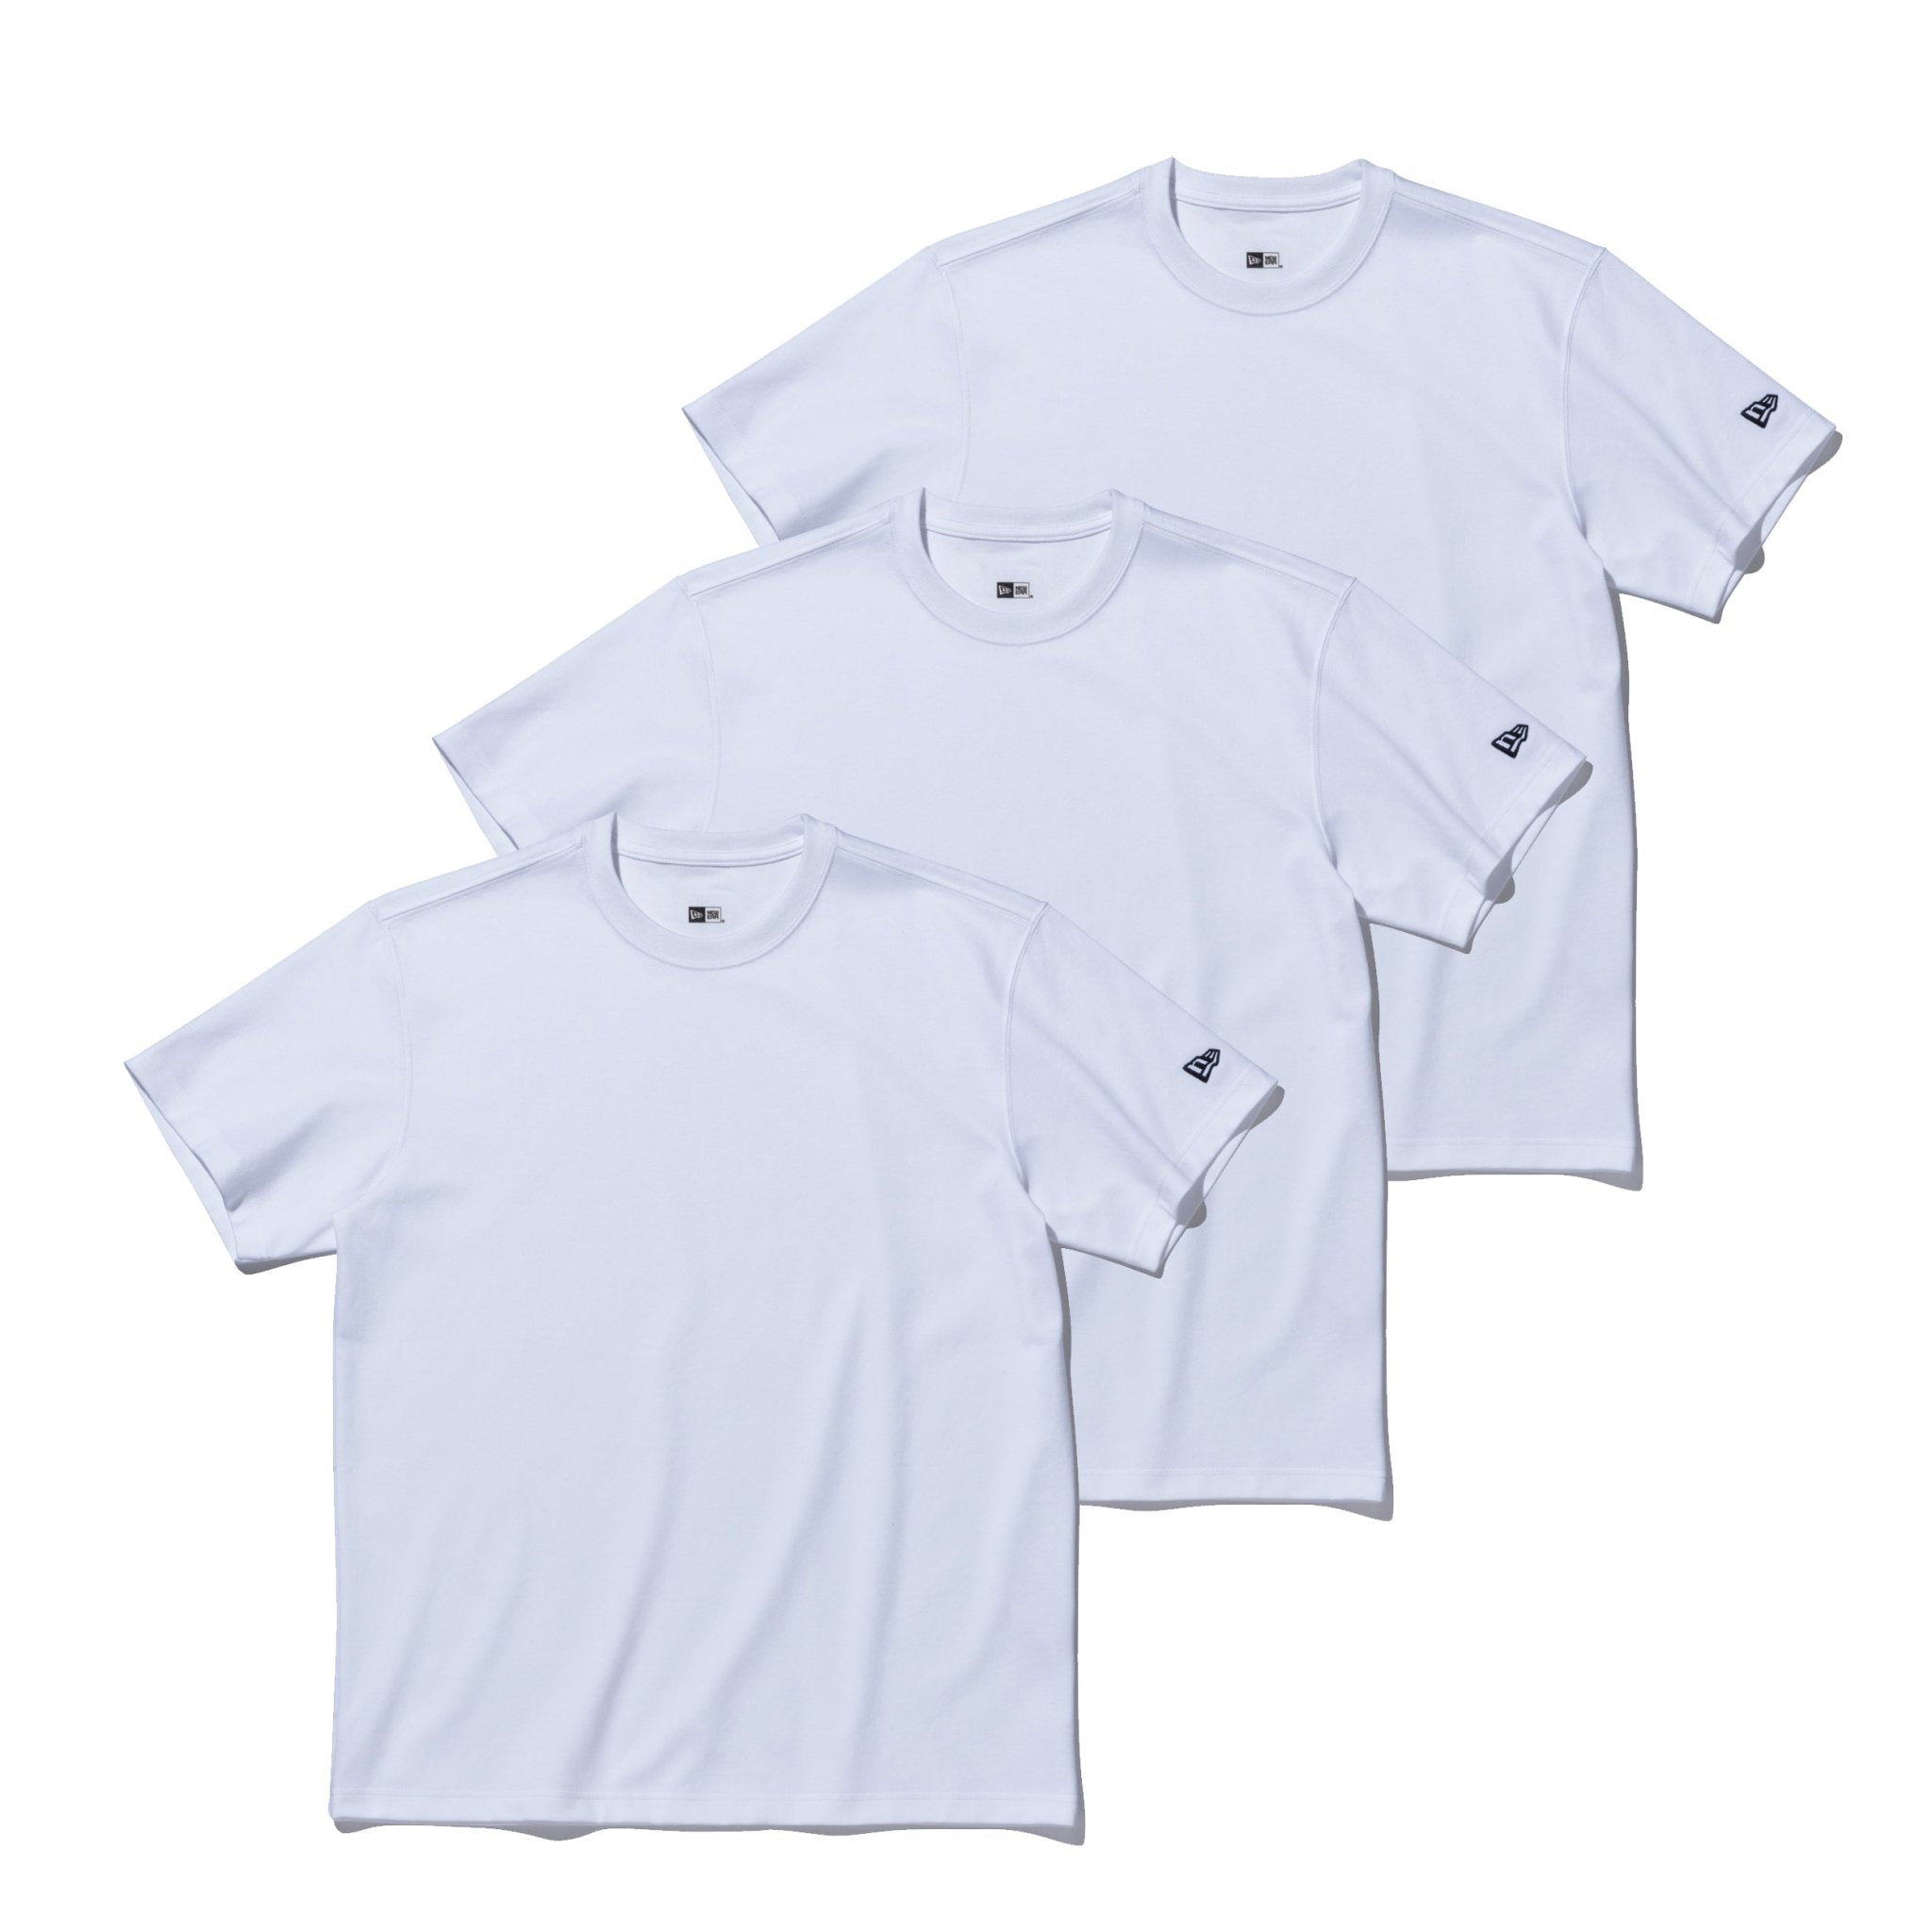 3-Pack 半袖 パフォーマンス Tシャツ ホワイト | ニューエラオンライン ...